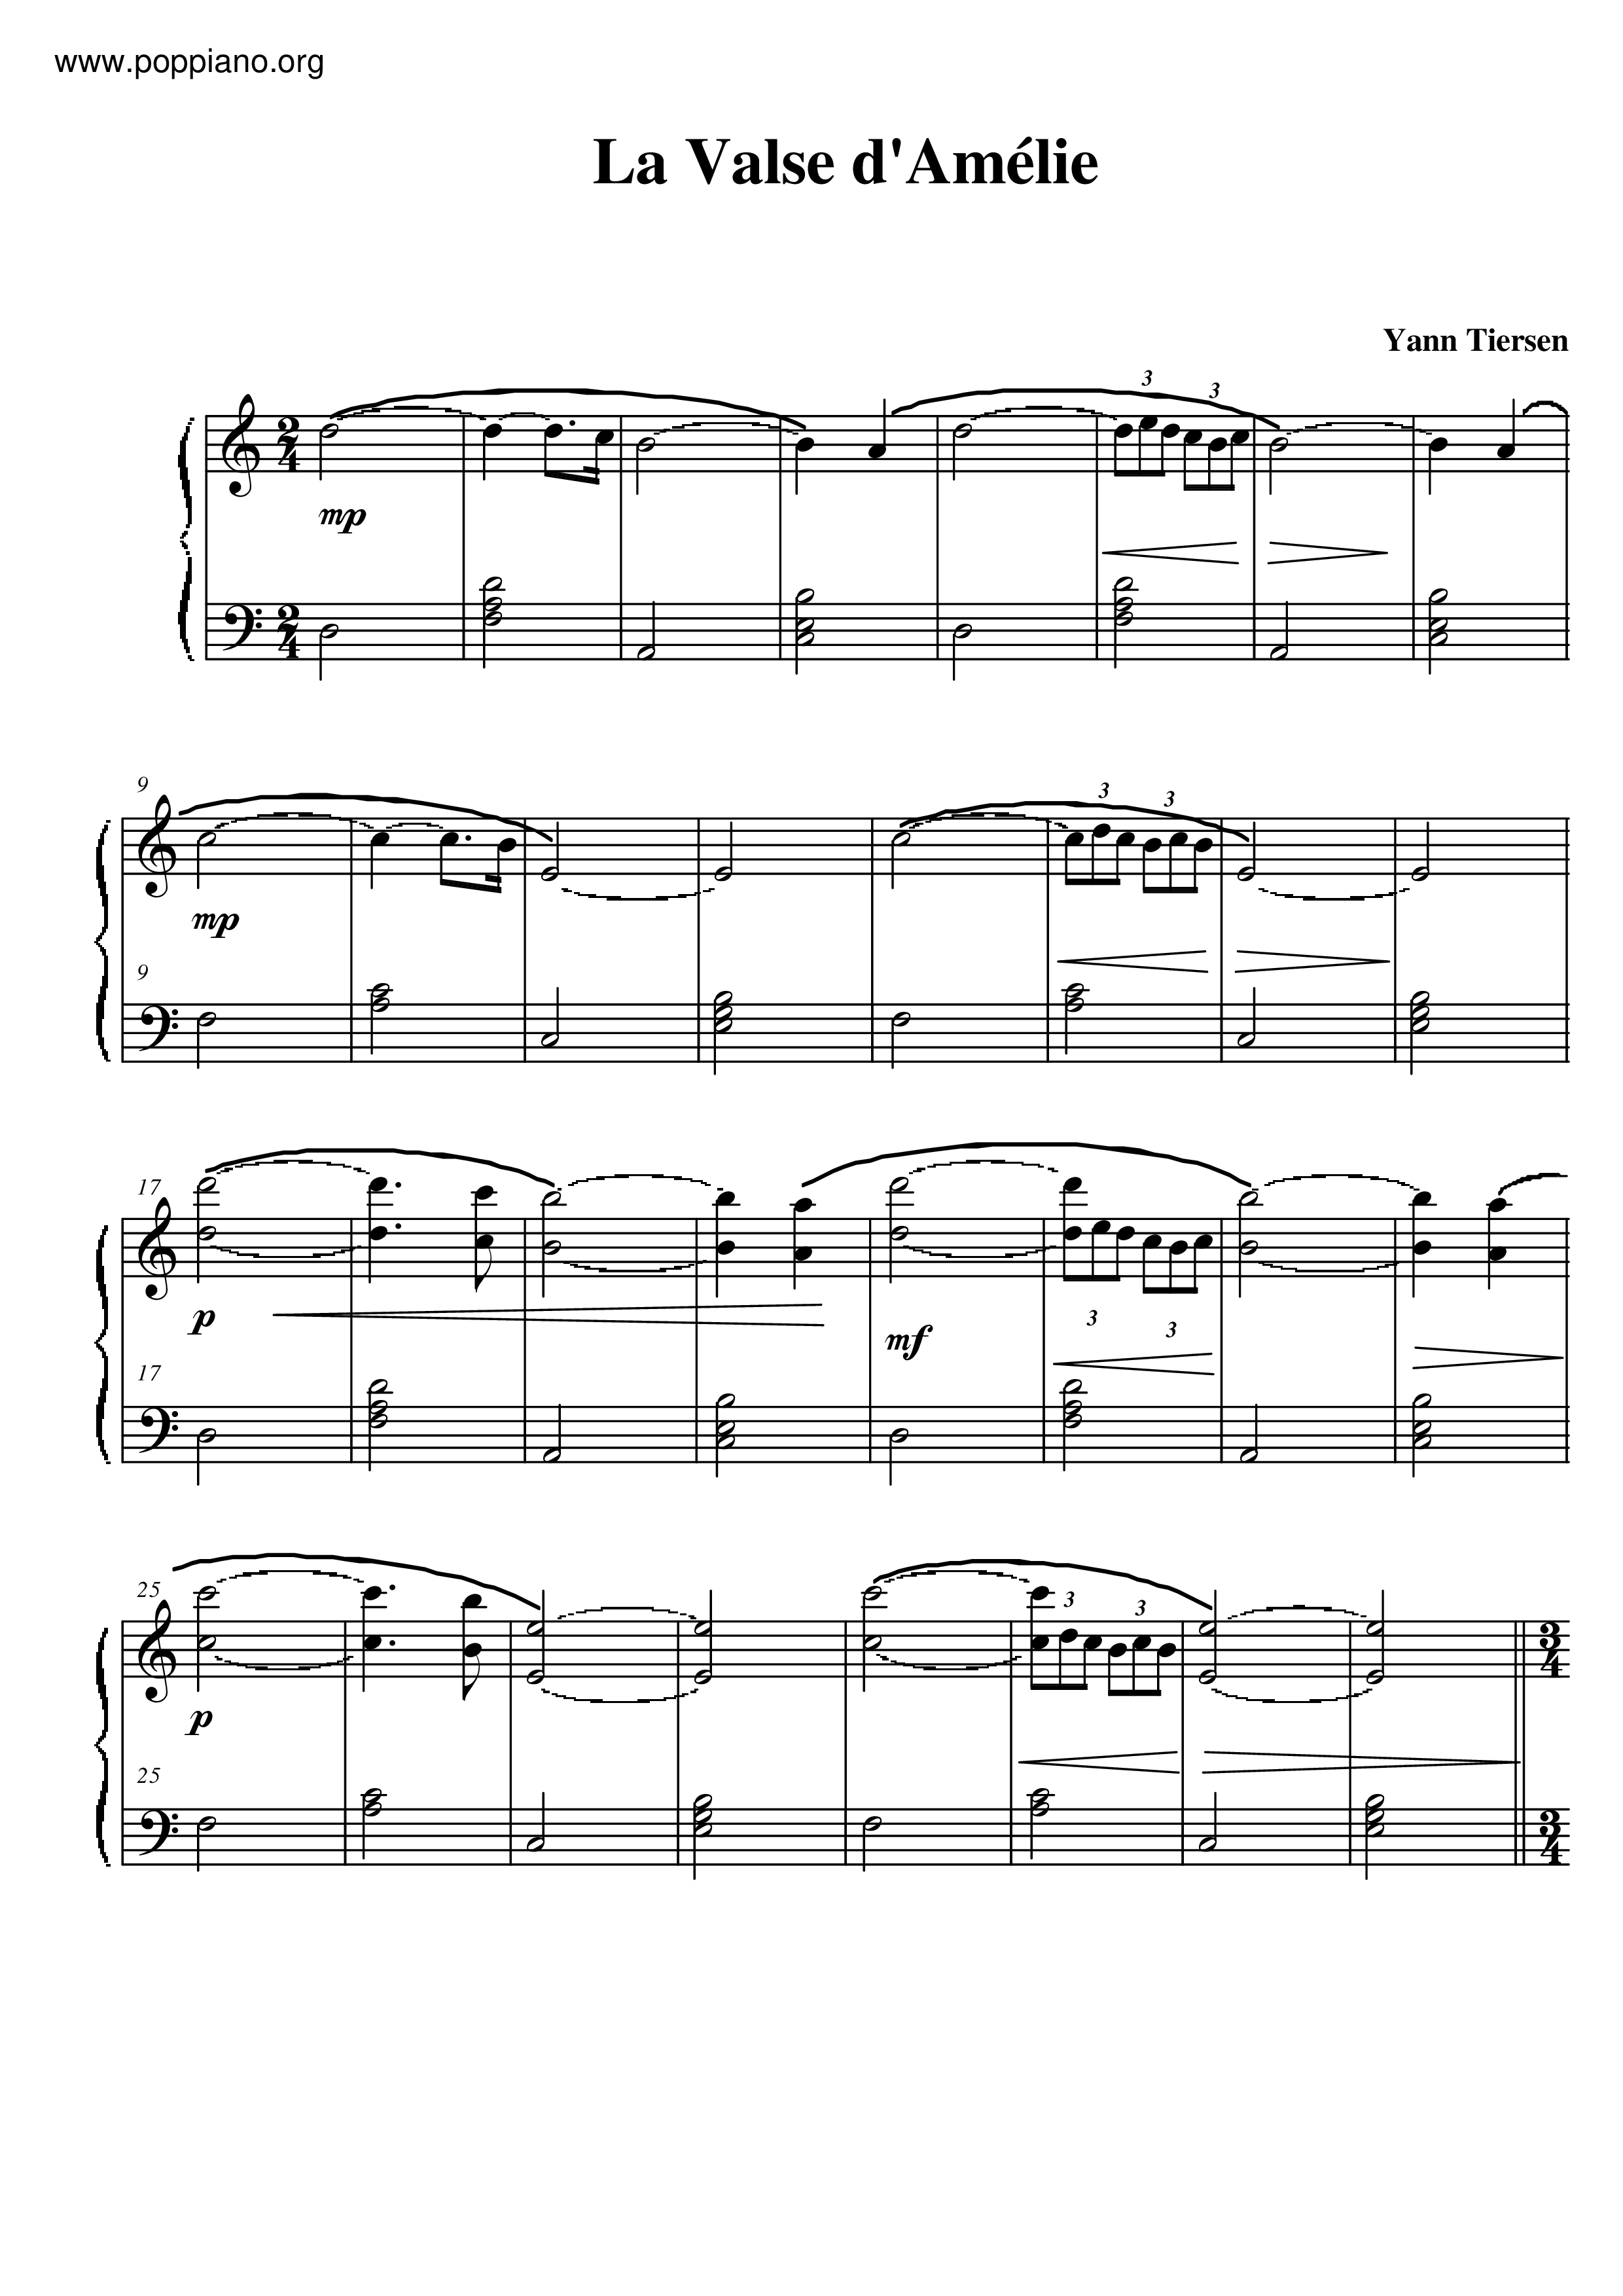 Yann Tiersen La Valse D Amelie Sheet Music Pdf Free Score Download Uloz.to je v cechach a na slovensku jednickou pro svobodne sdileni souboru. yann tiersen la valse d amelie sheet